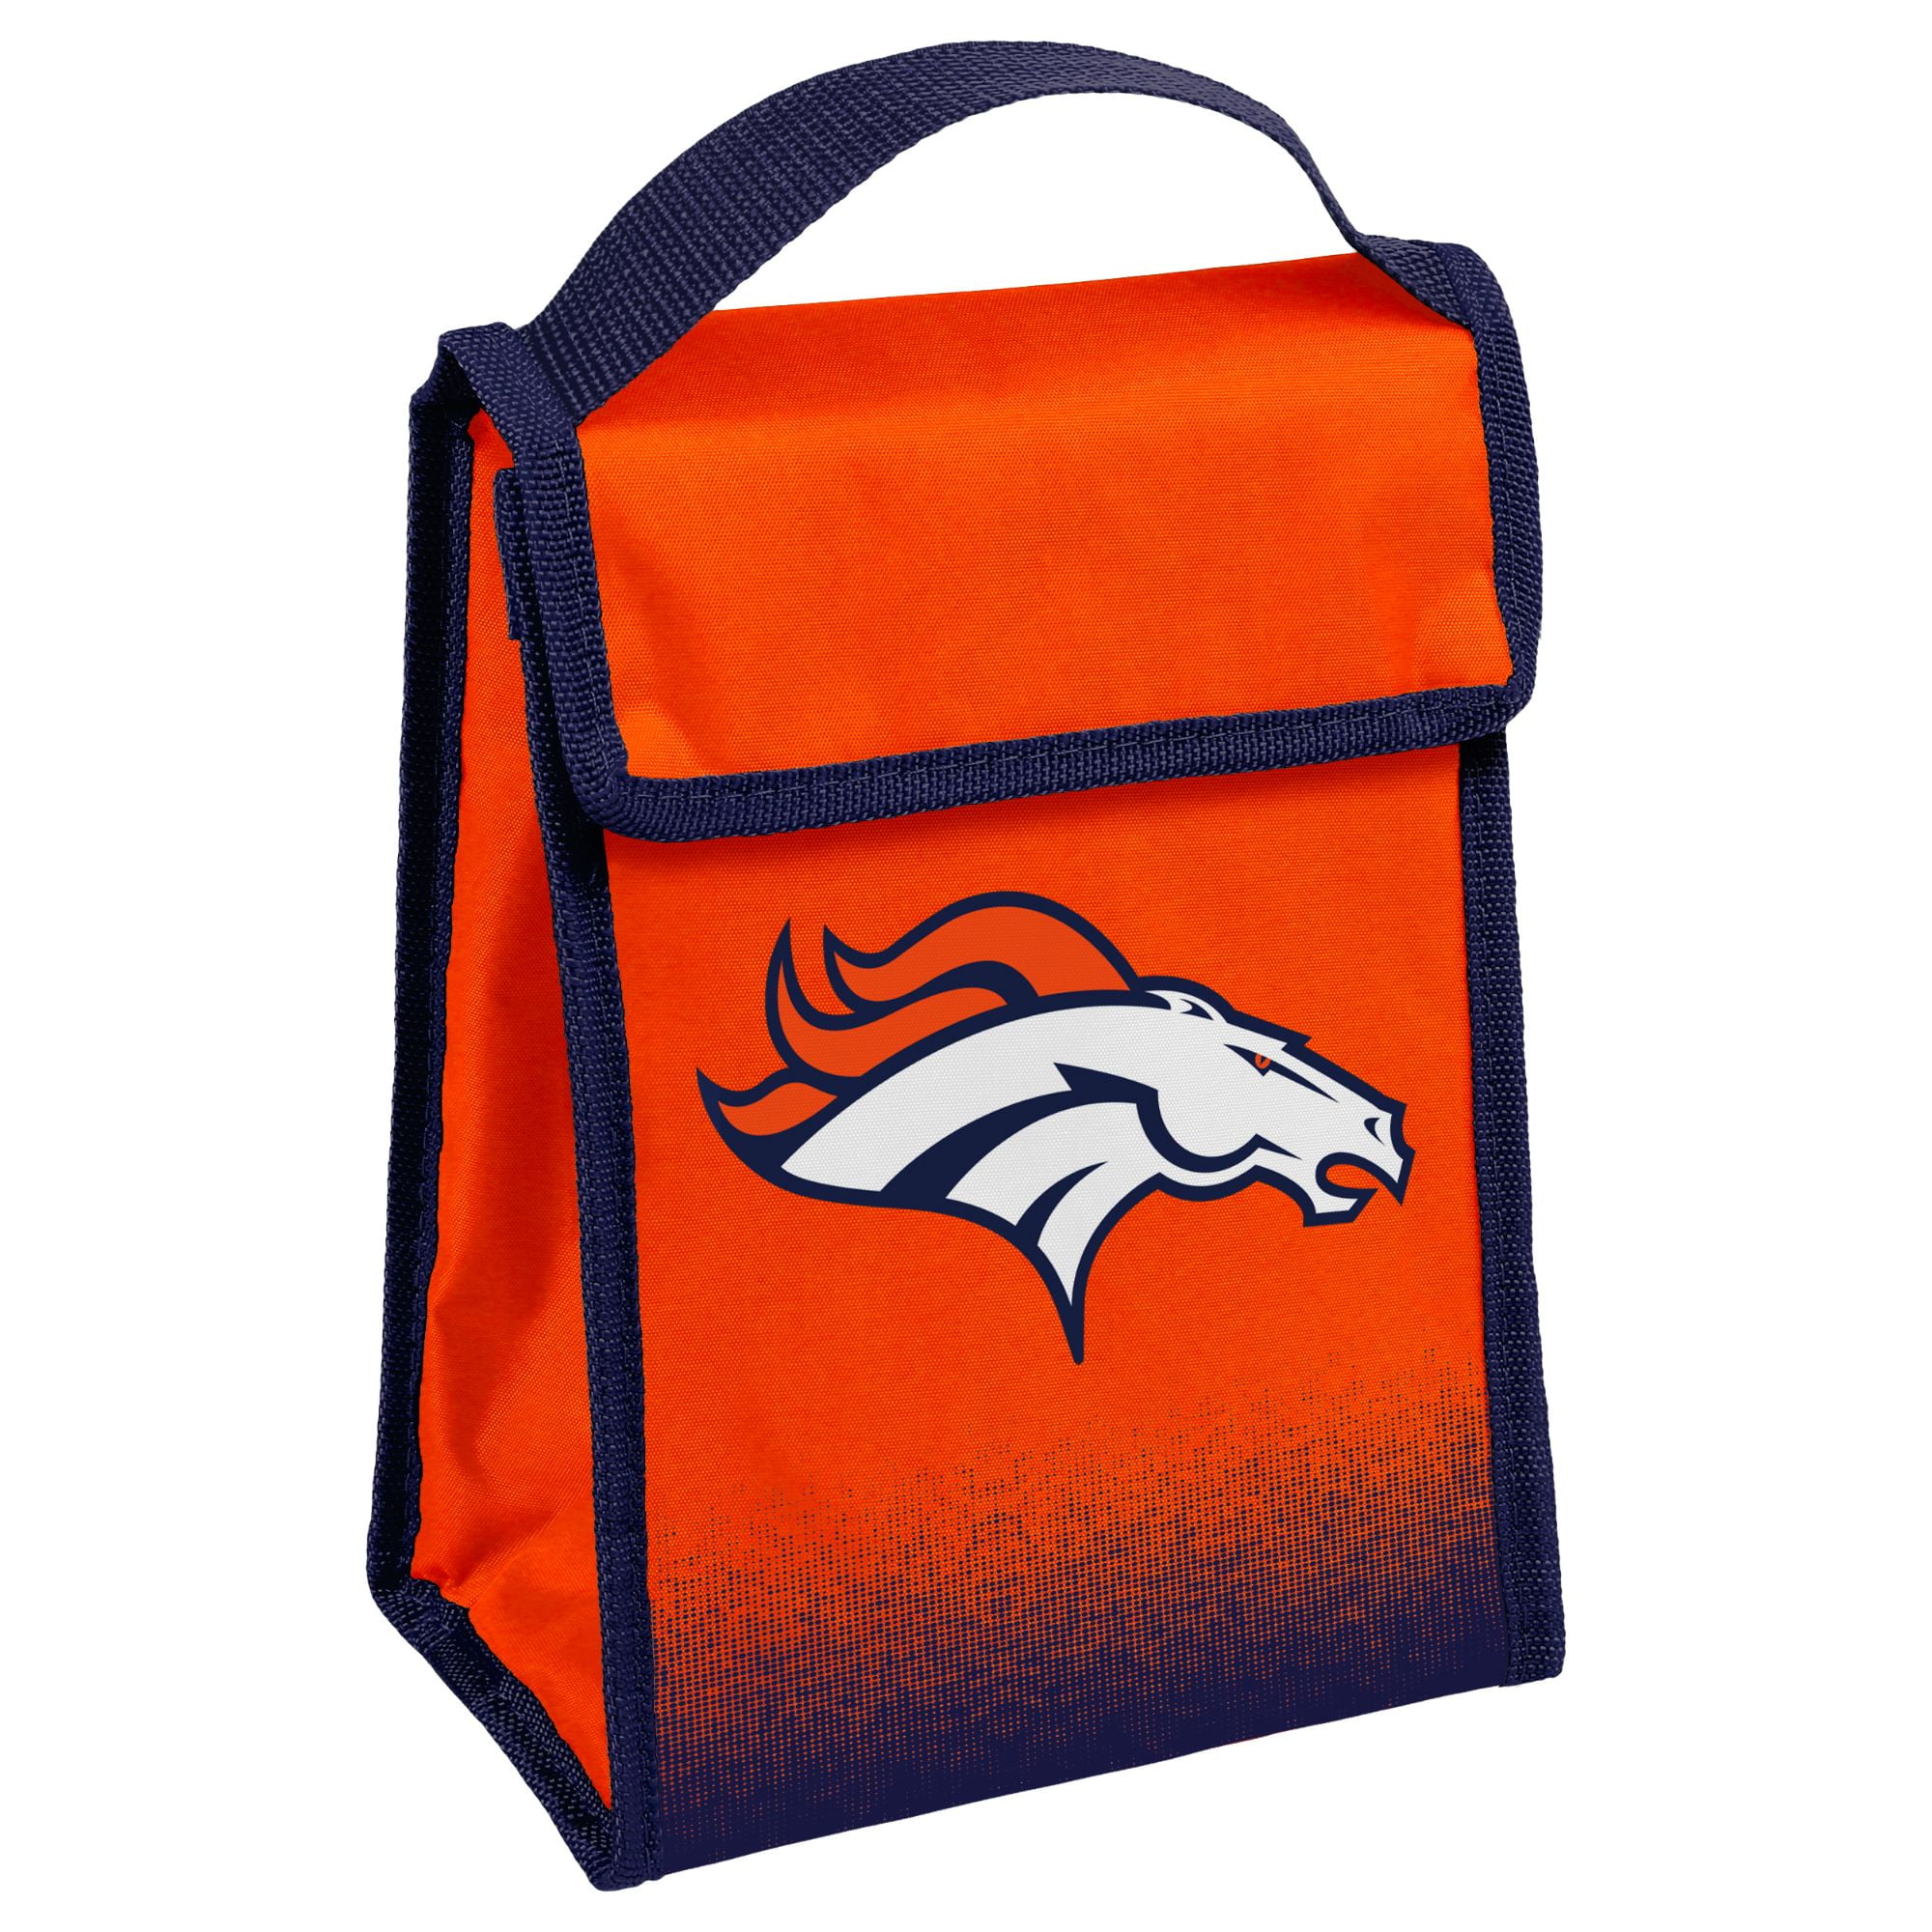 Gradient Lunch Bag, Denver Broncos 